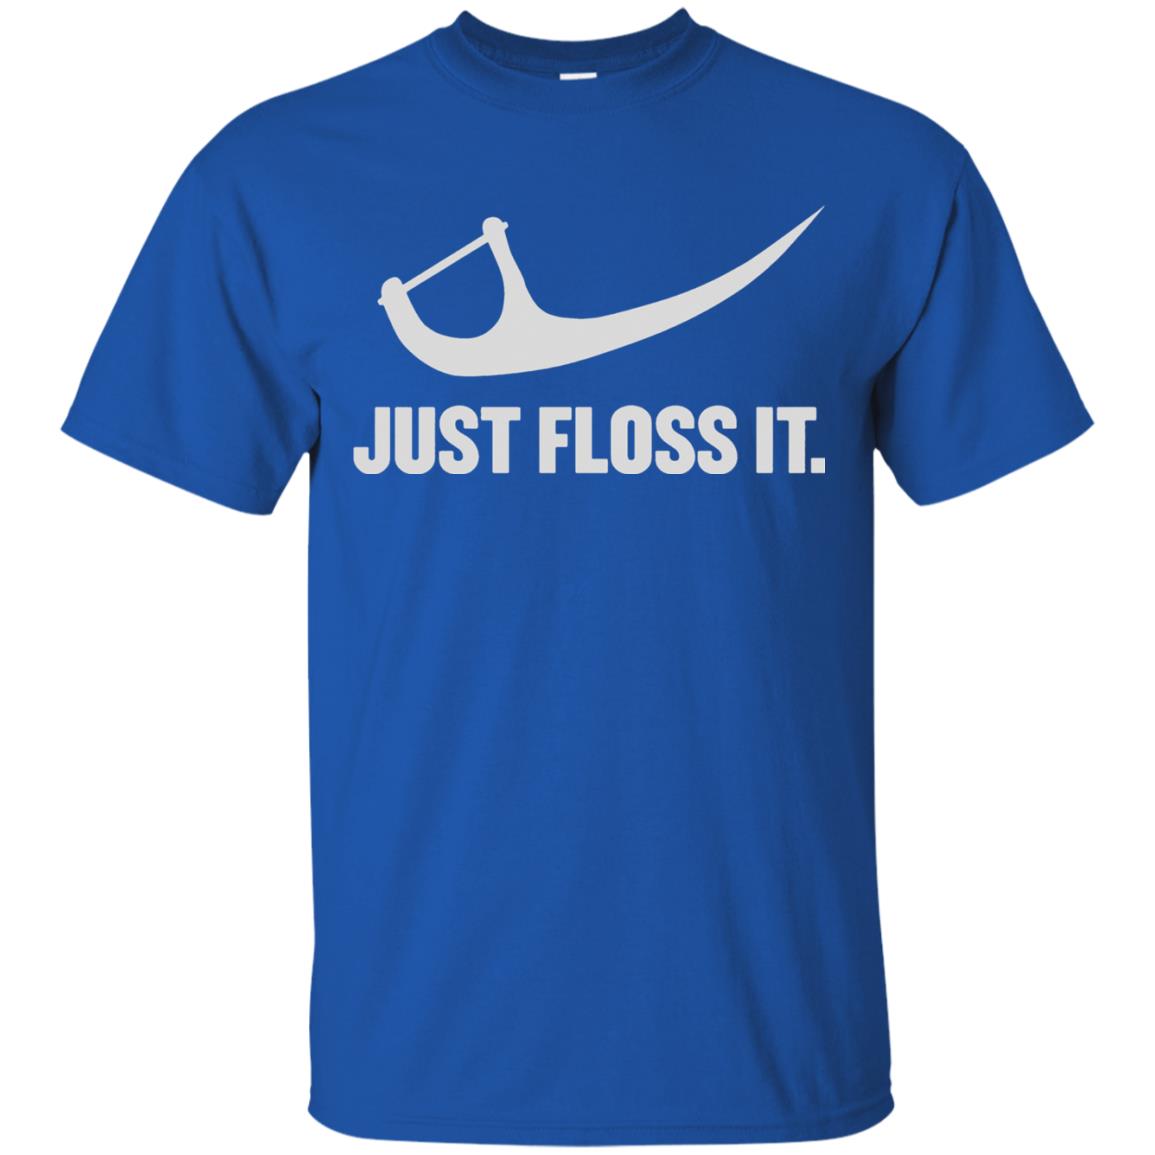 floss t shirt